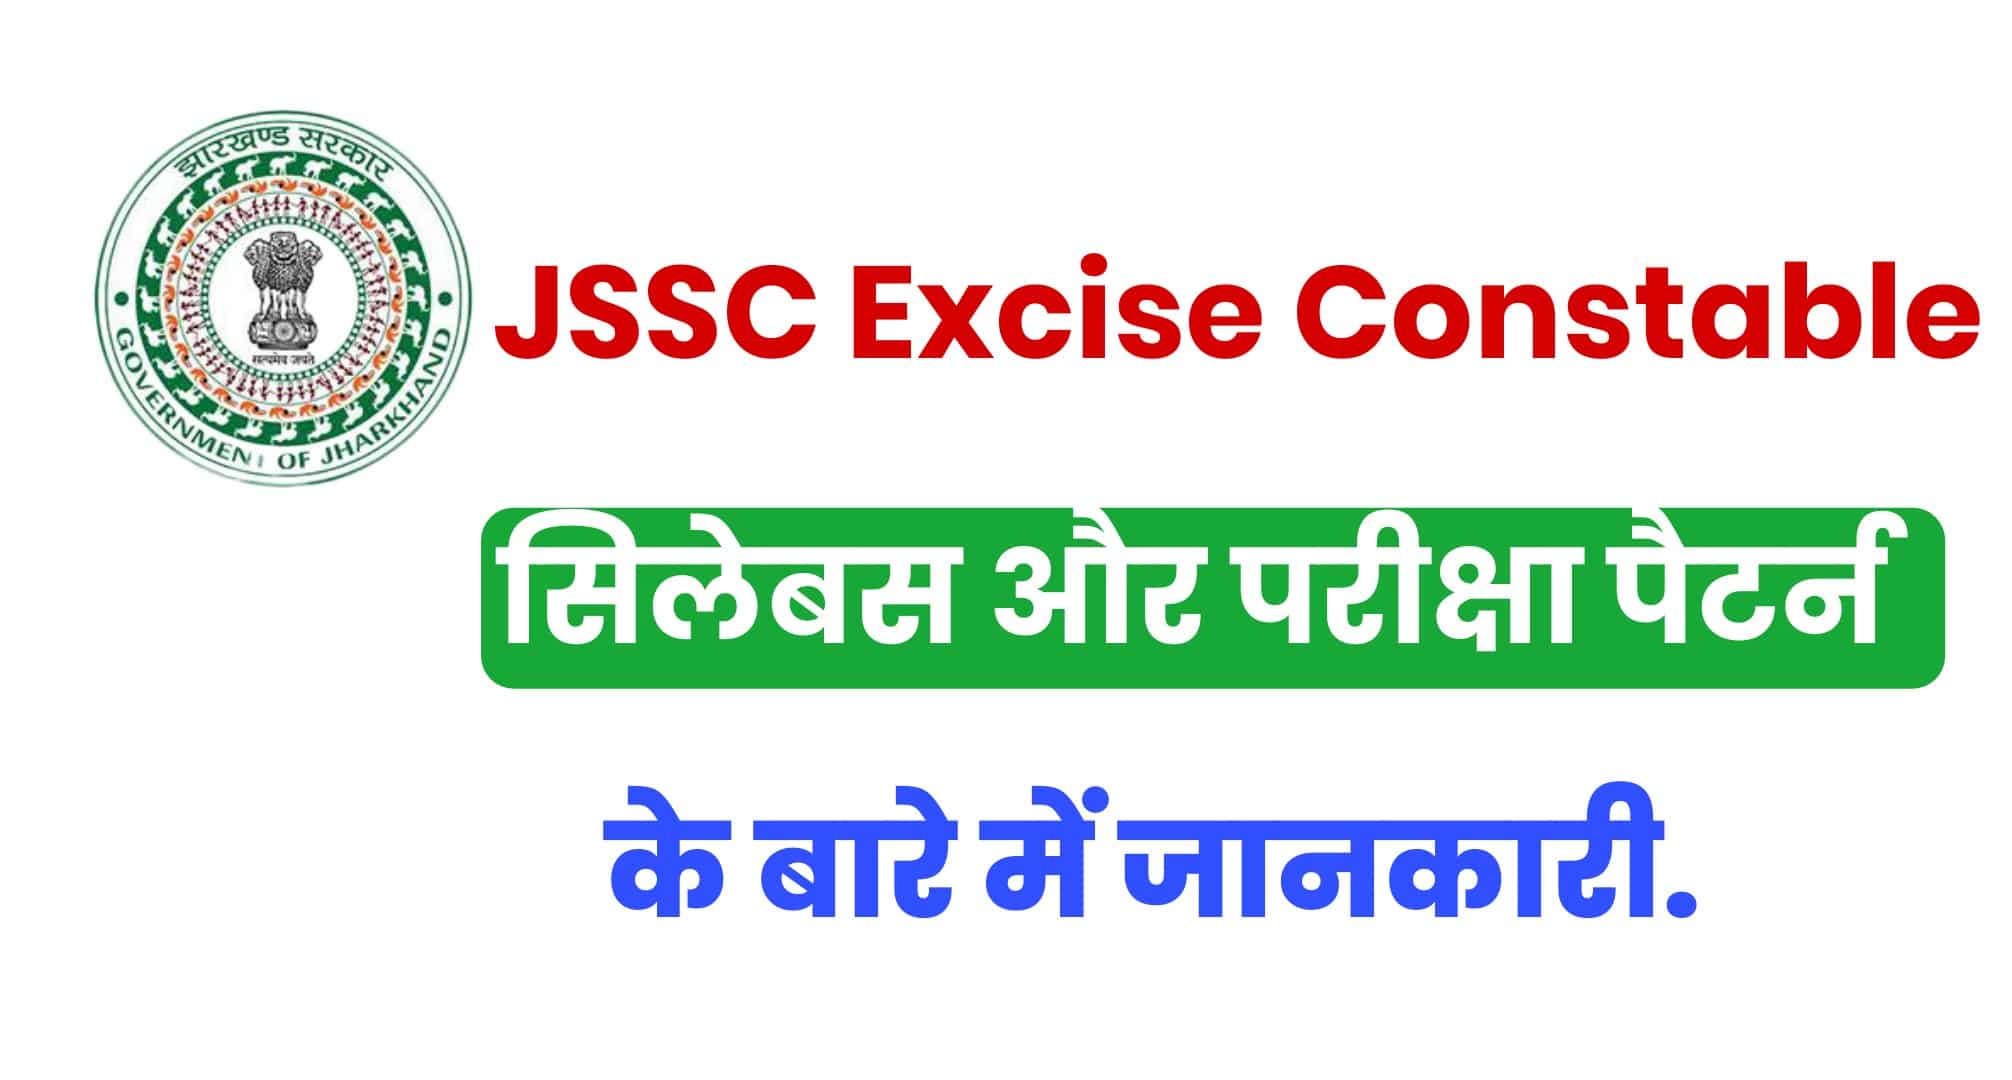 JSSC Excise Constable Syllabus 2022 In Hindi | झारखंड आबकारी कॉन्स्टेबल सिलेबस हिंदी में